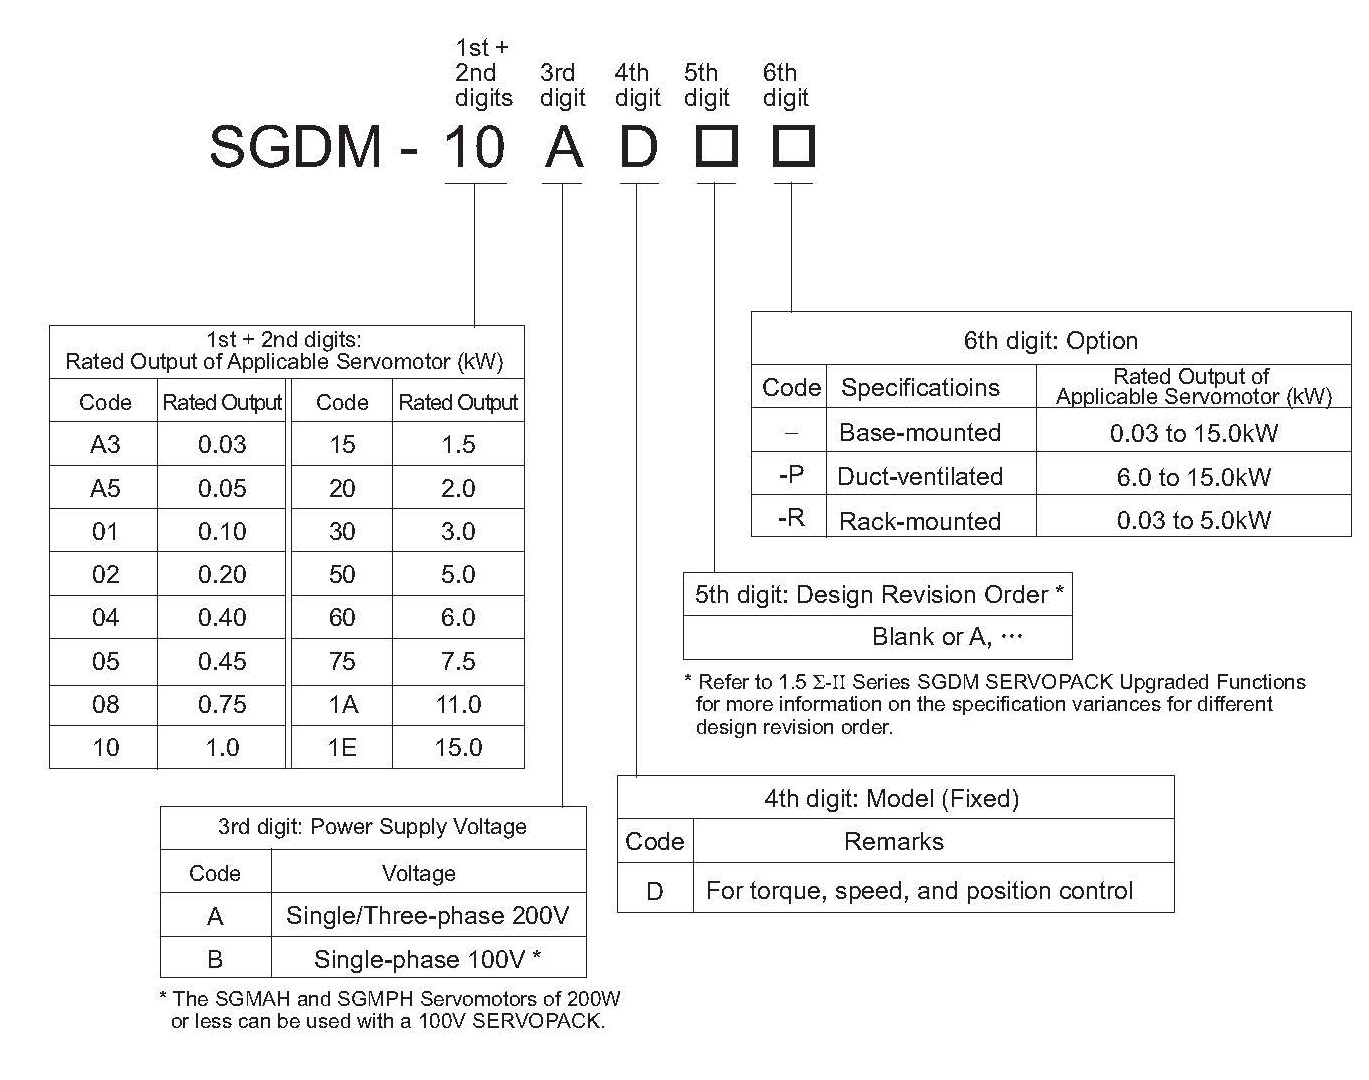 SGDM-02ADA-R spec